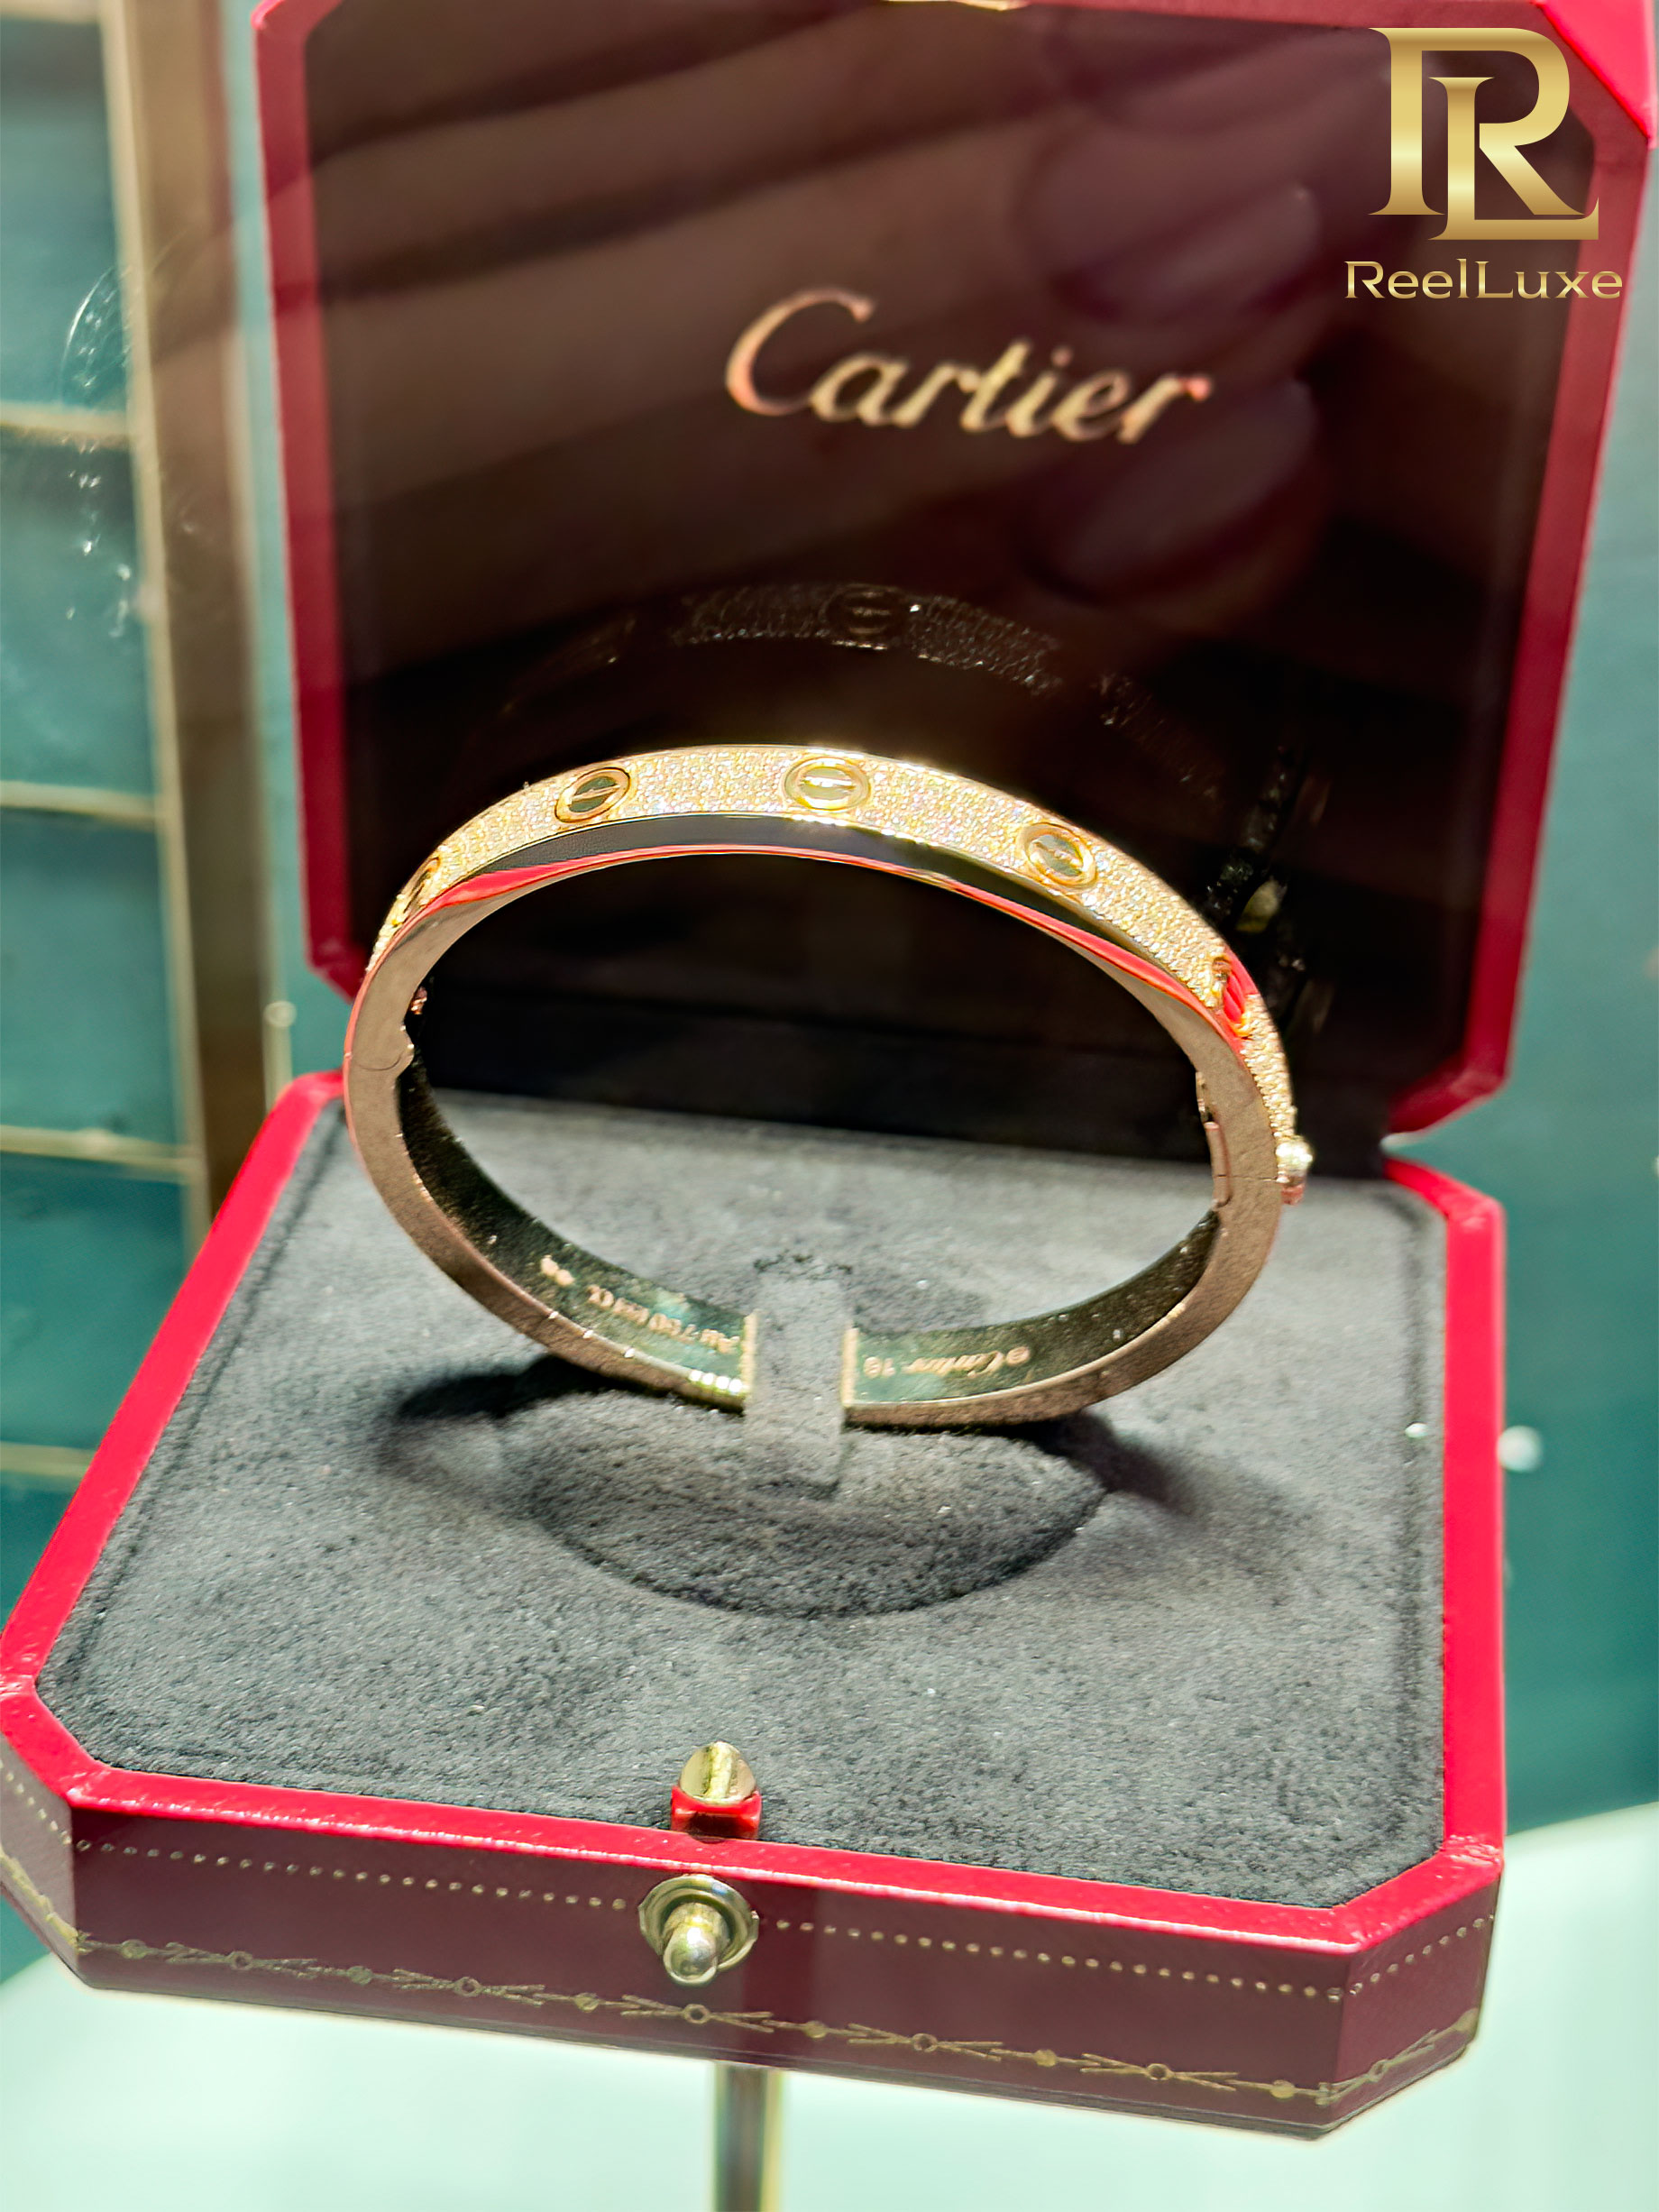 Bracelet LOVE Cartier pavé de diamants, or jaune 18 carats - Boutique Cartier Firenze - Florence, Italie - 2